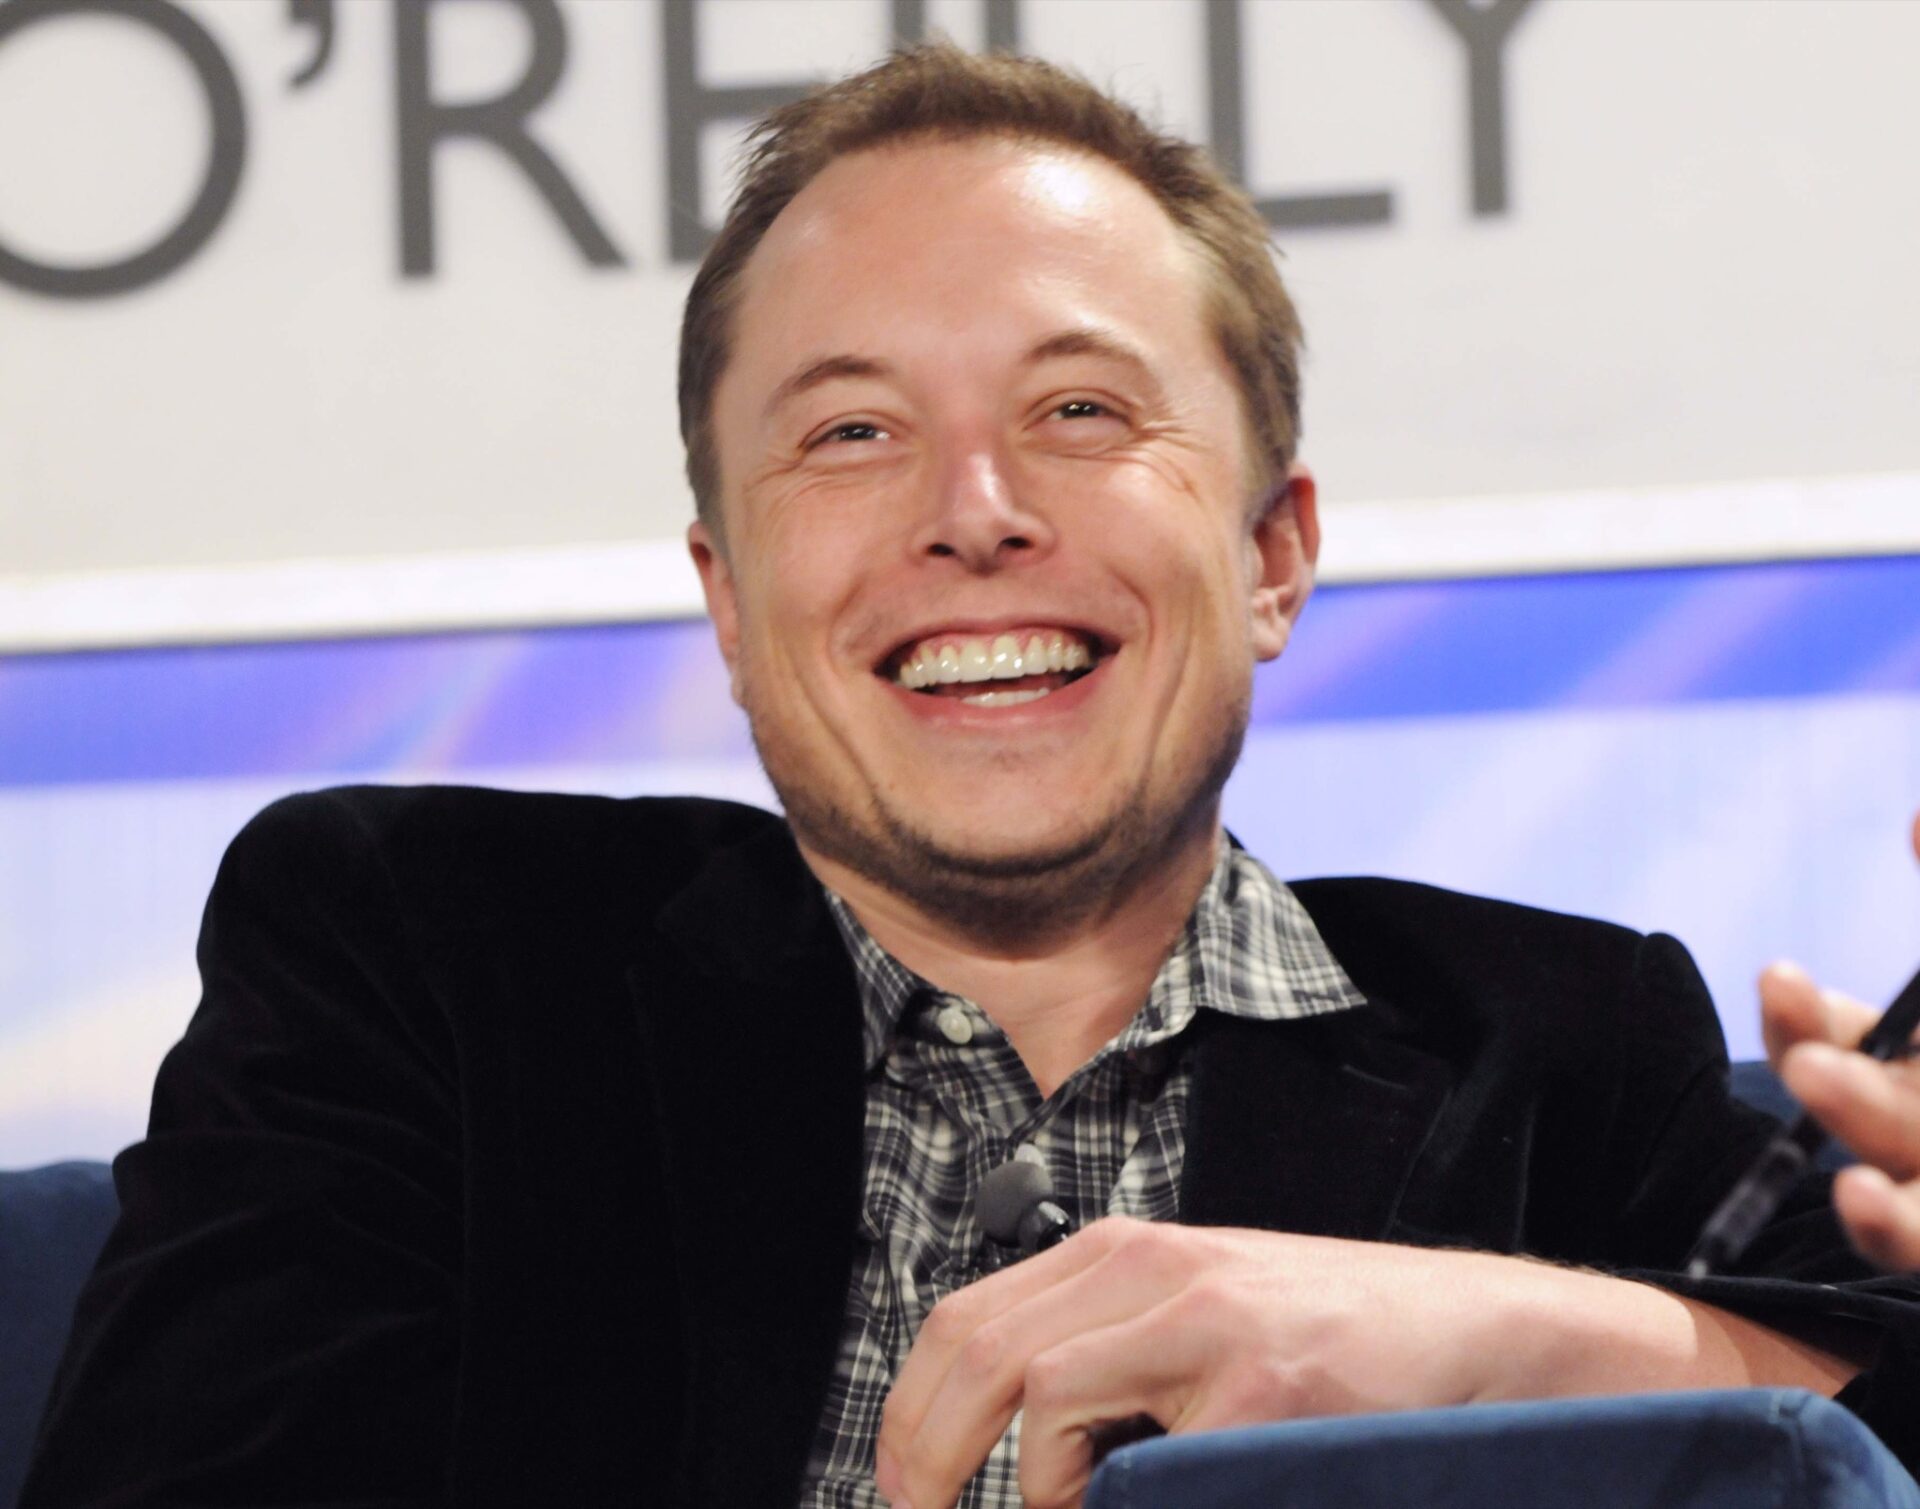 Elon Musk e Wikipédia: imagem mostra bilionário rindo